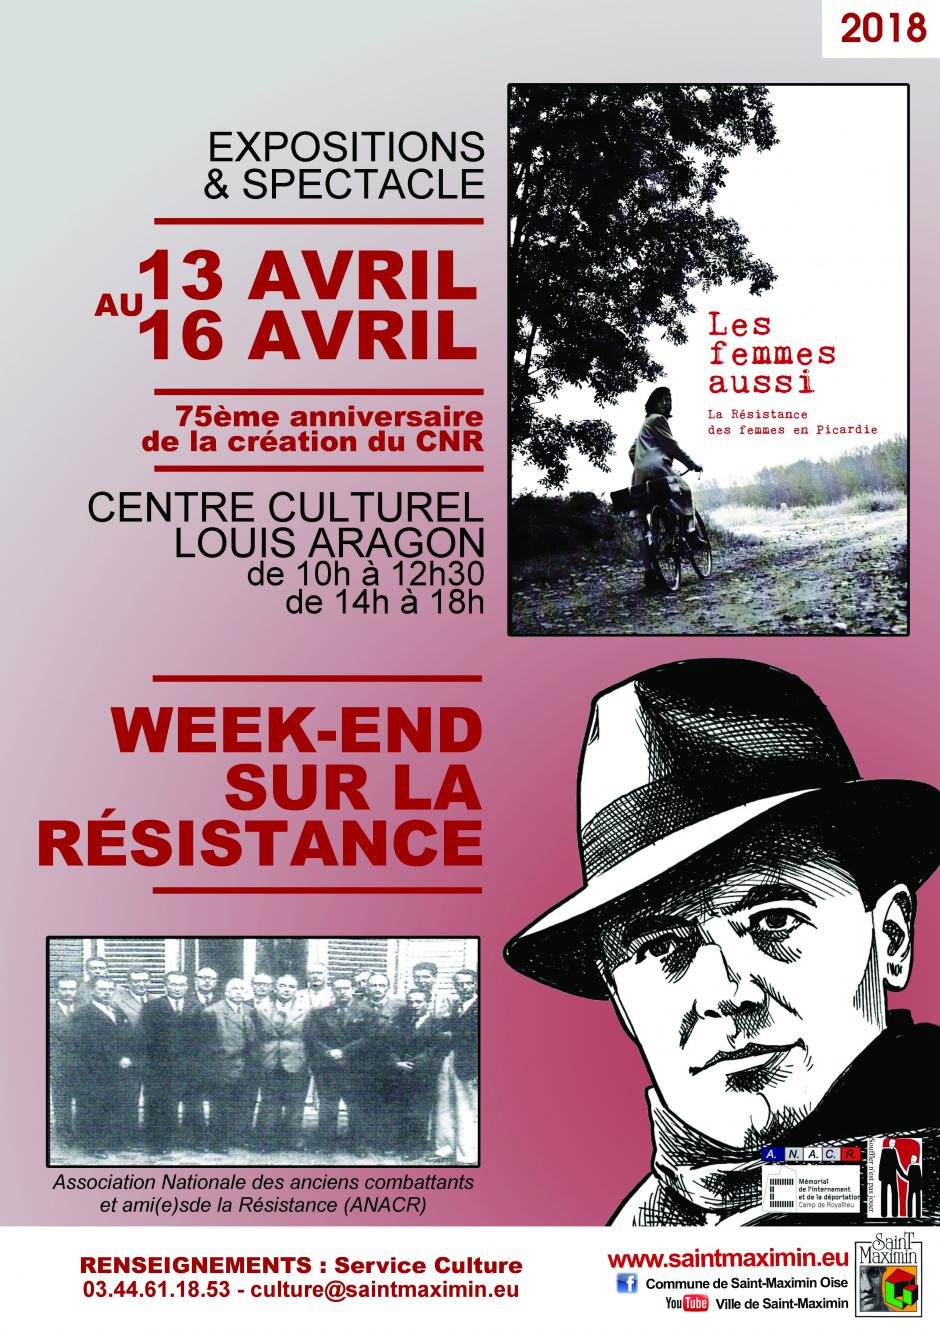 13 au 16 avril, Saint-Maximin - ANACR Oise-Week-end sur la Résistance